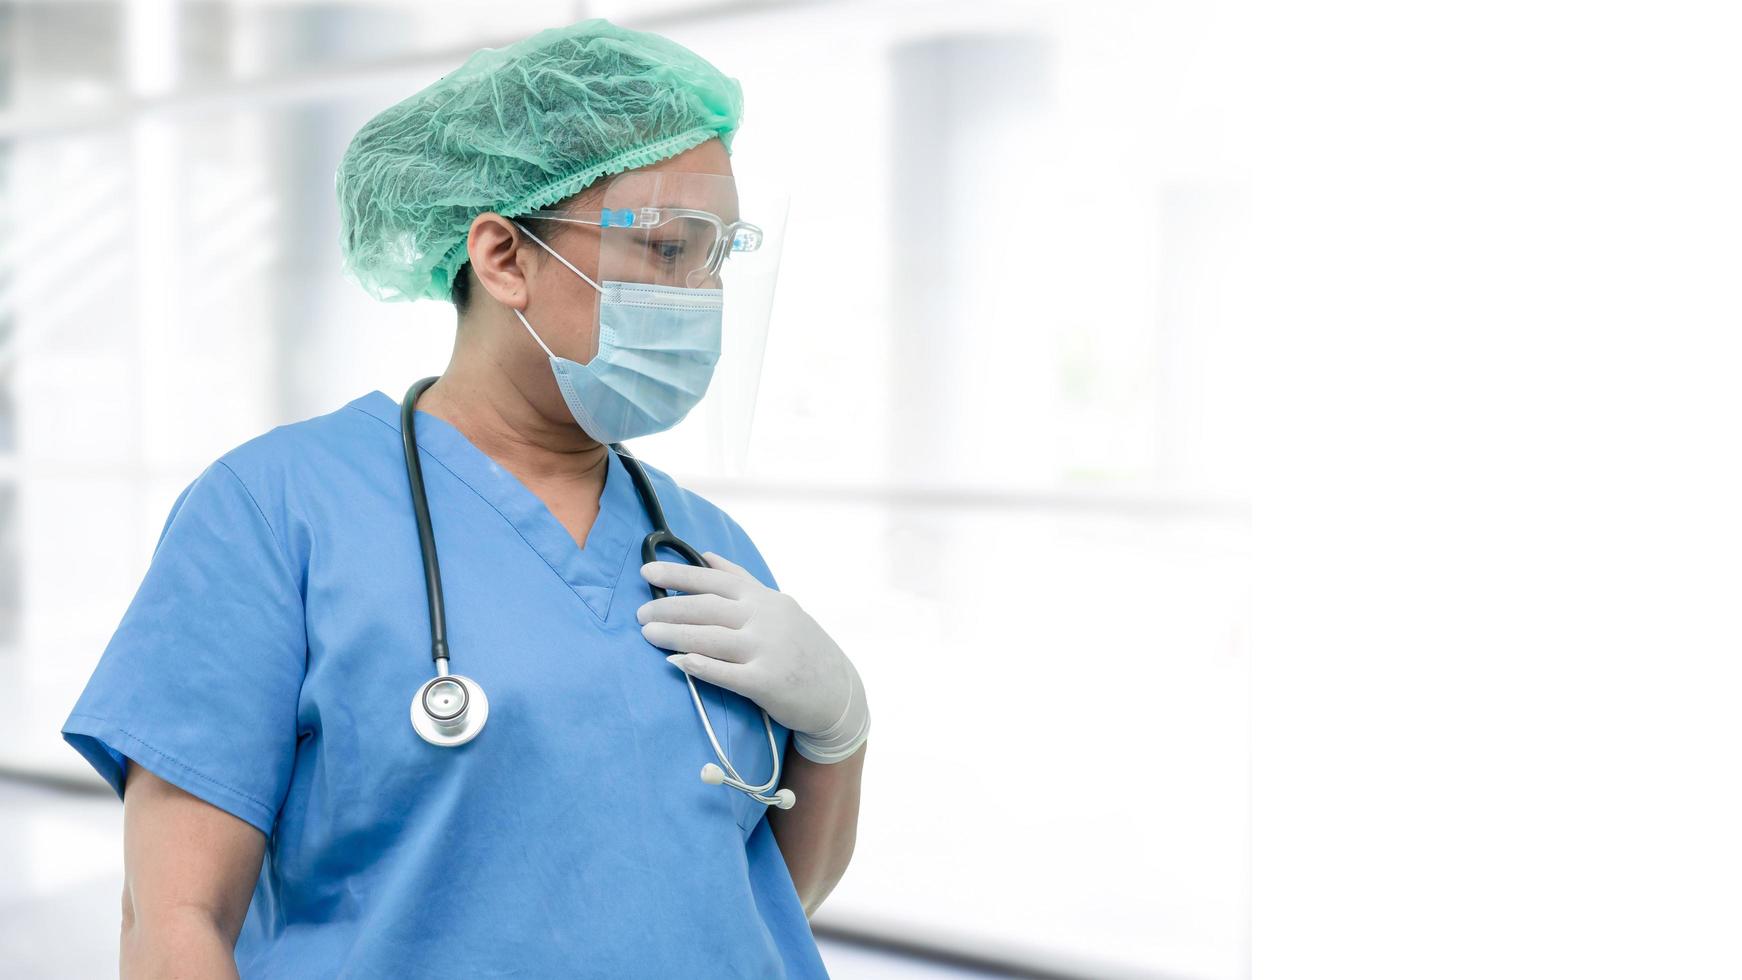 medico asiatico che indossa visiera e tuta in dpi nuovo normale per controllare il paziente proteggere la sicurezza infezione covid-19 focolaio di coronavirus nel reparto ospedaliero di quarantena foto